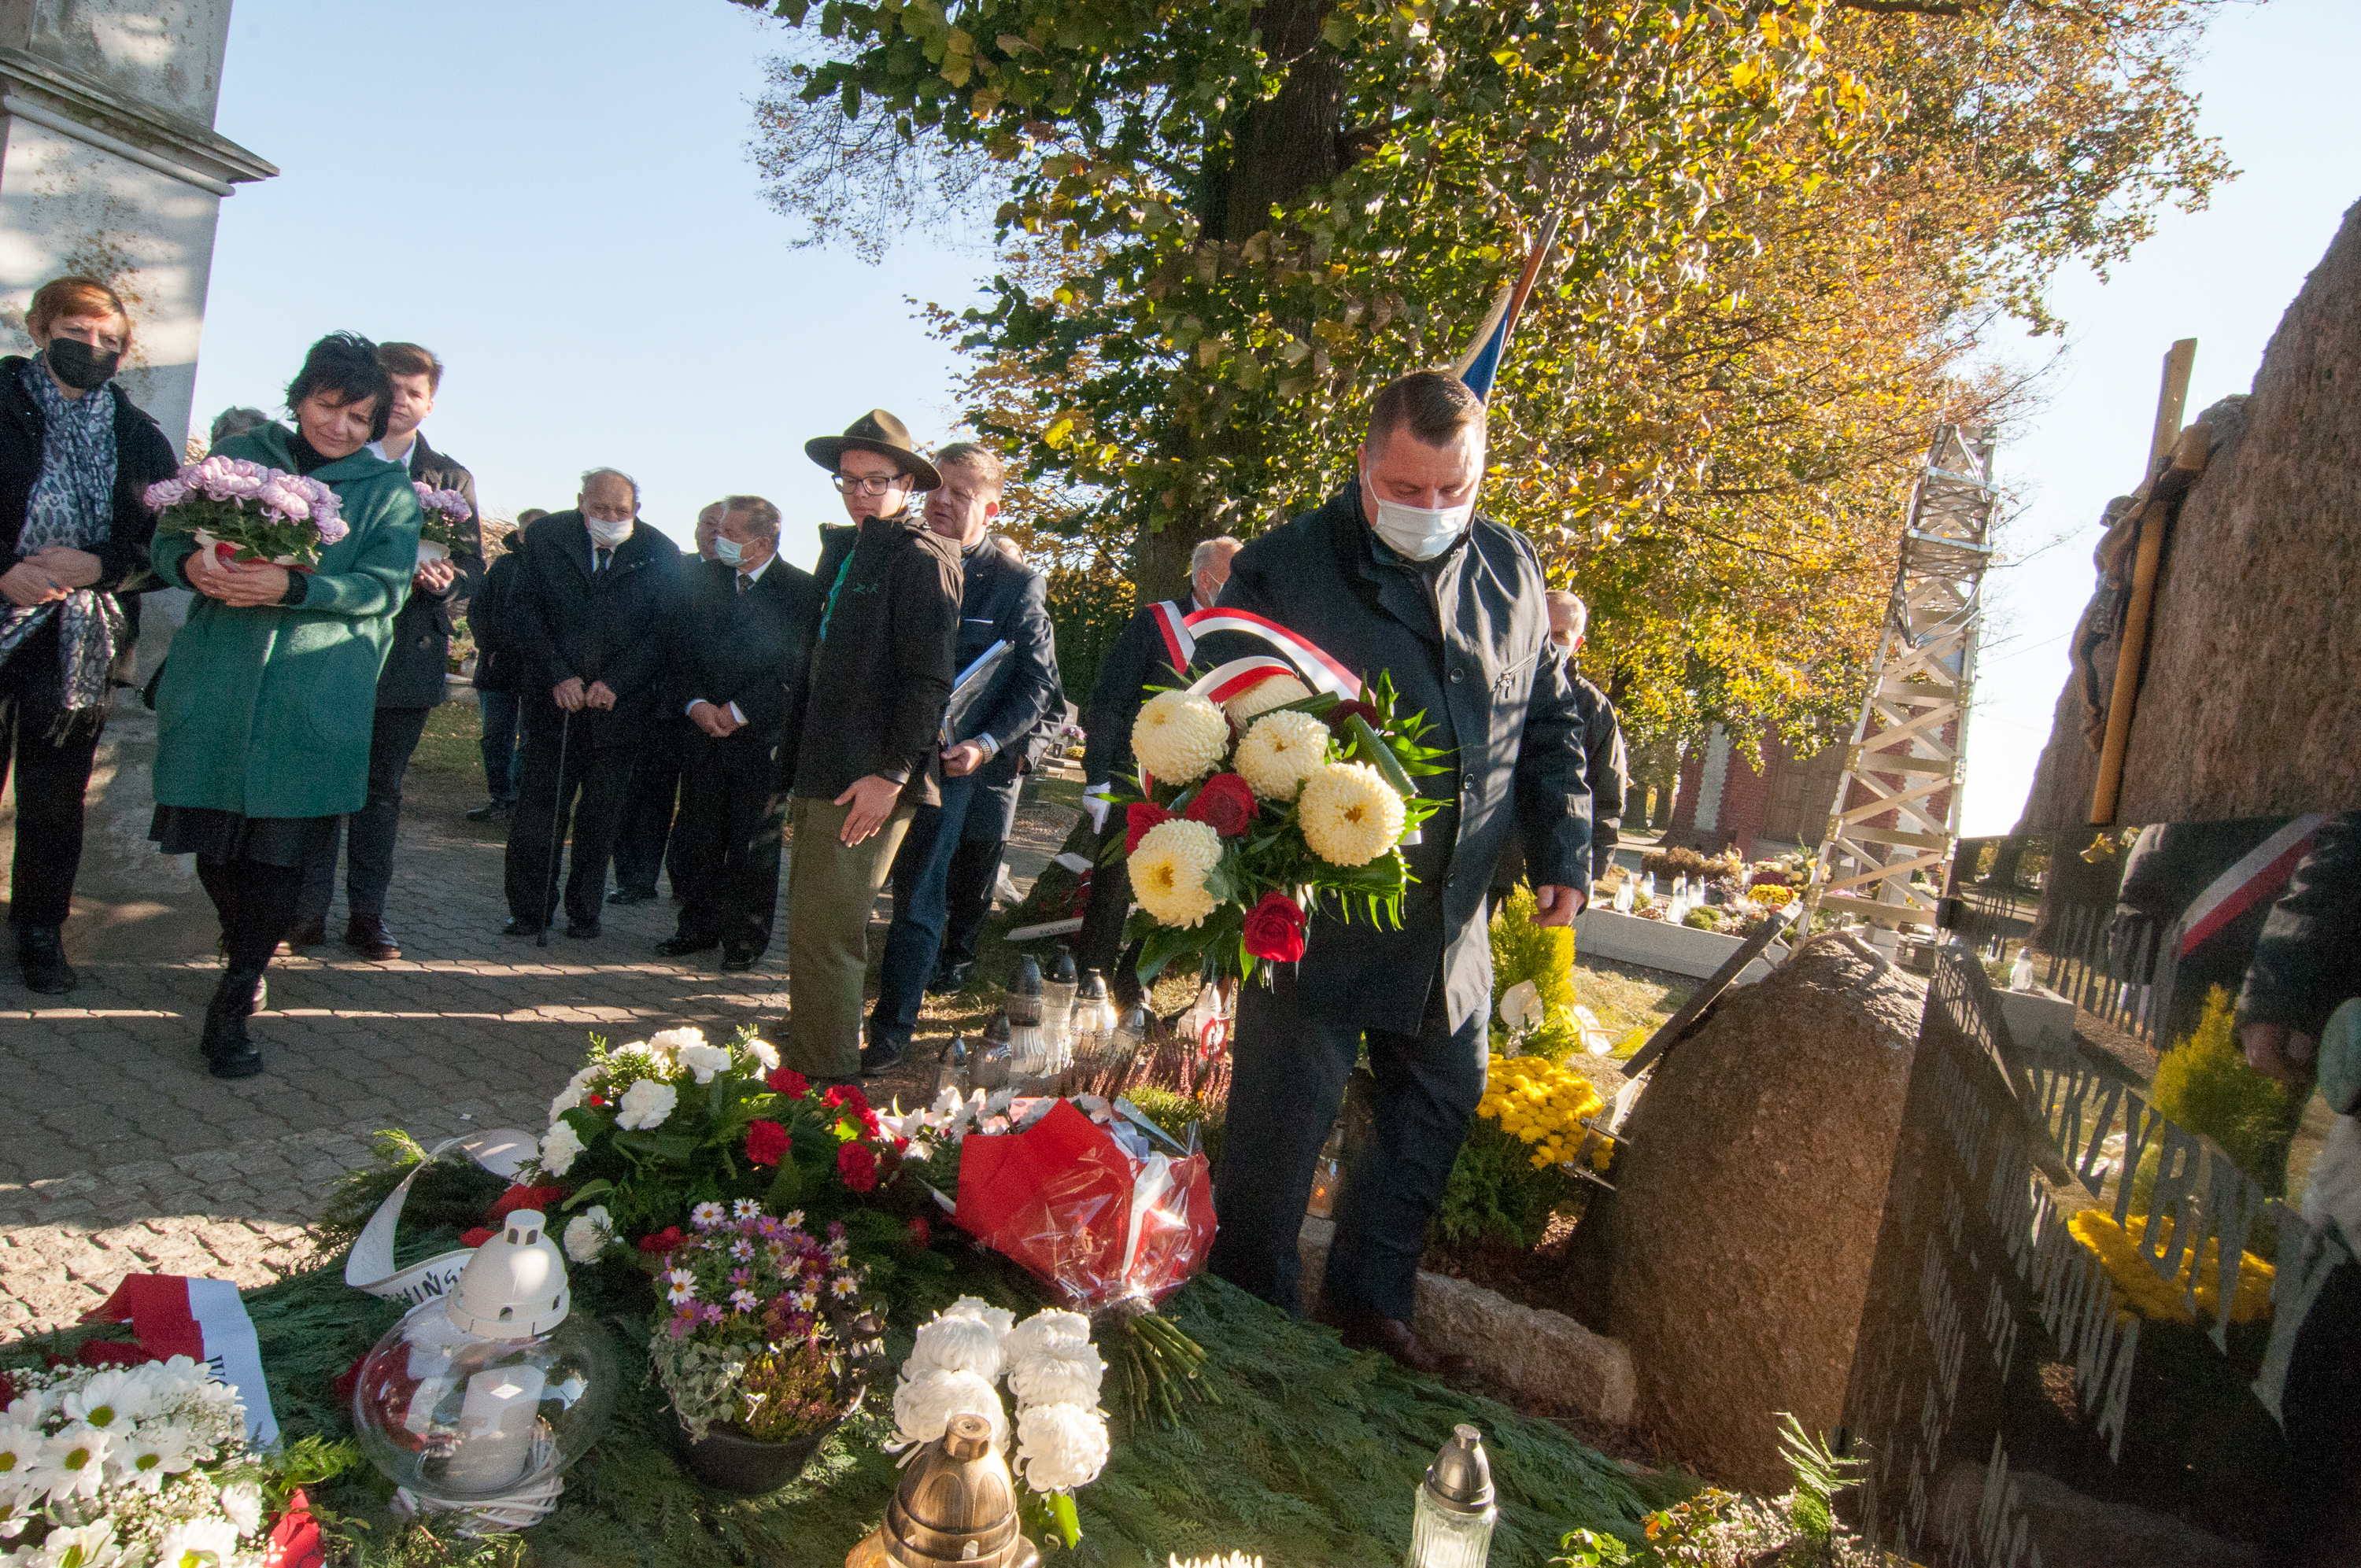 Zastępca wójta gminy Rudnik Tomasz Kruppa złożył kwiaty na grobie księdza Strzybnego.